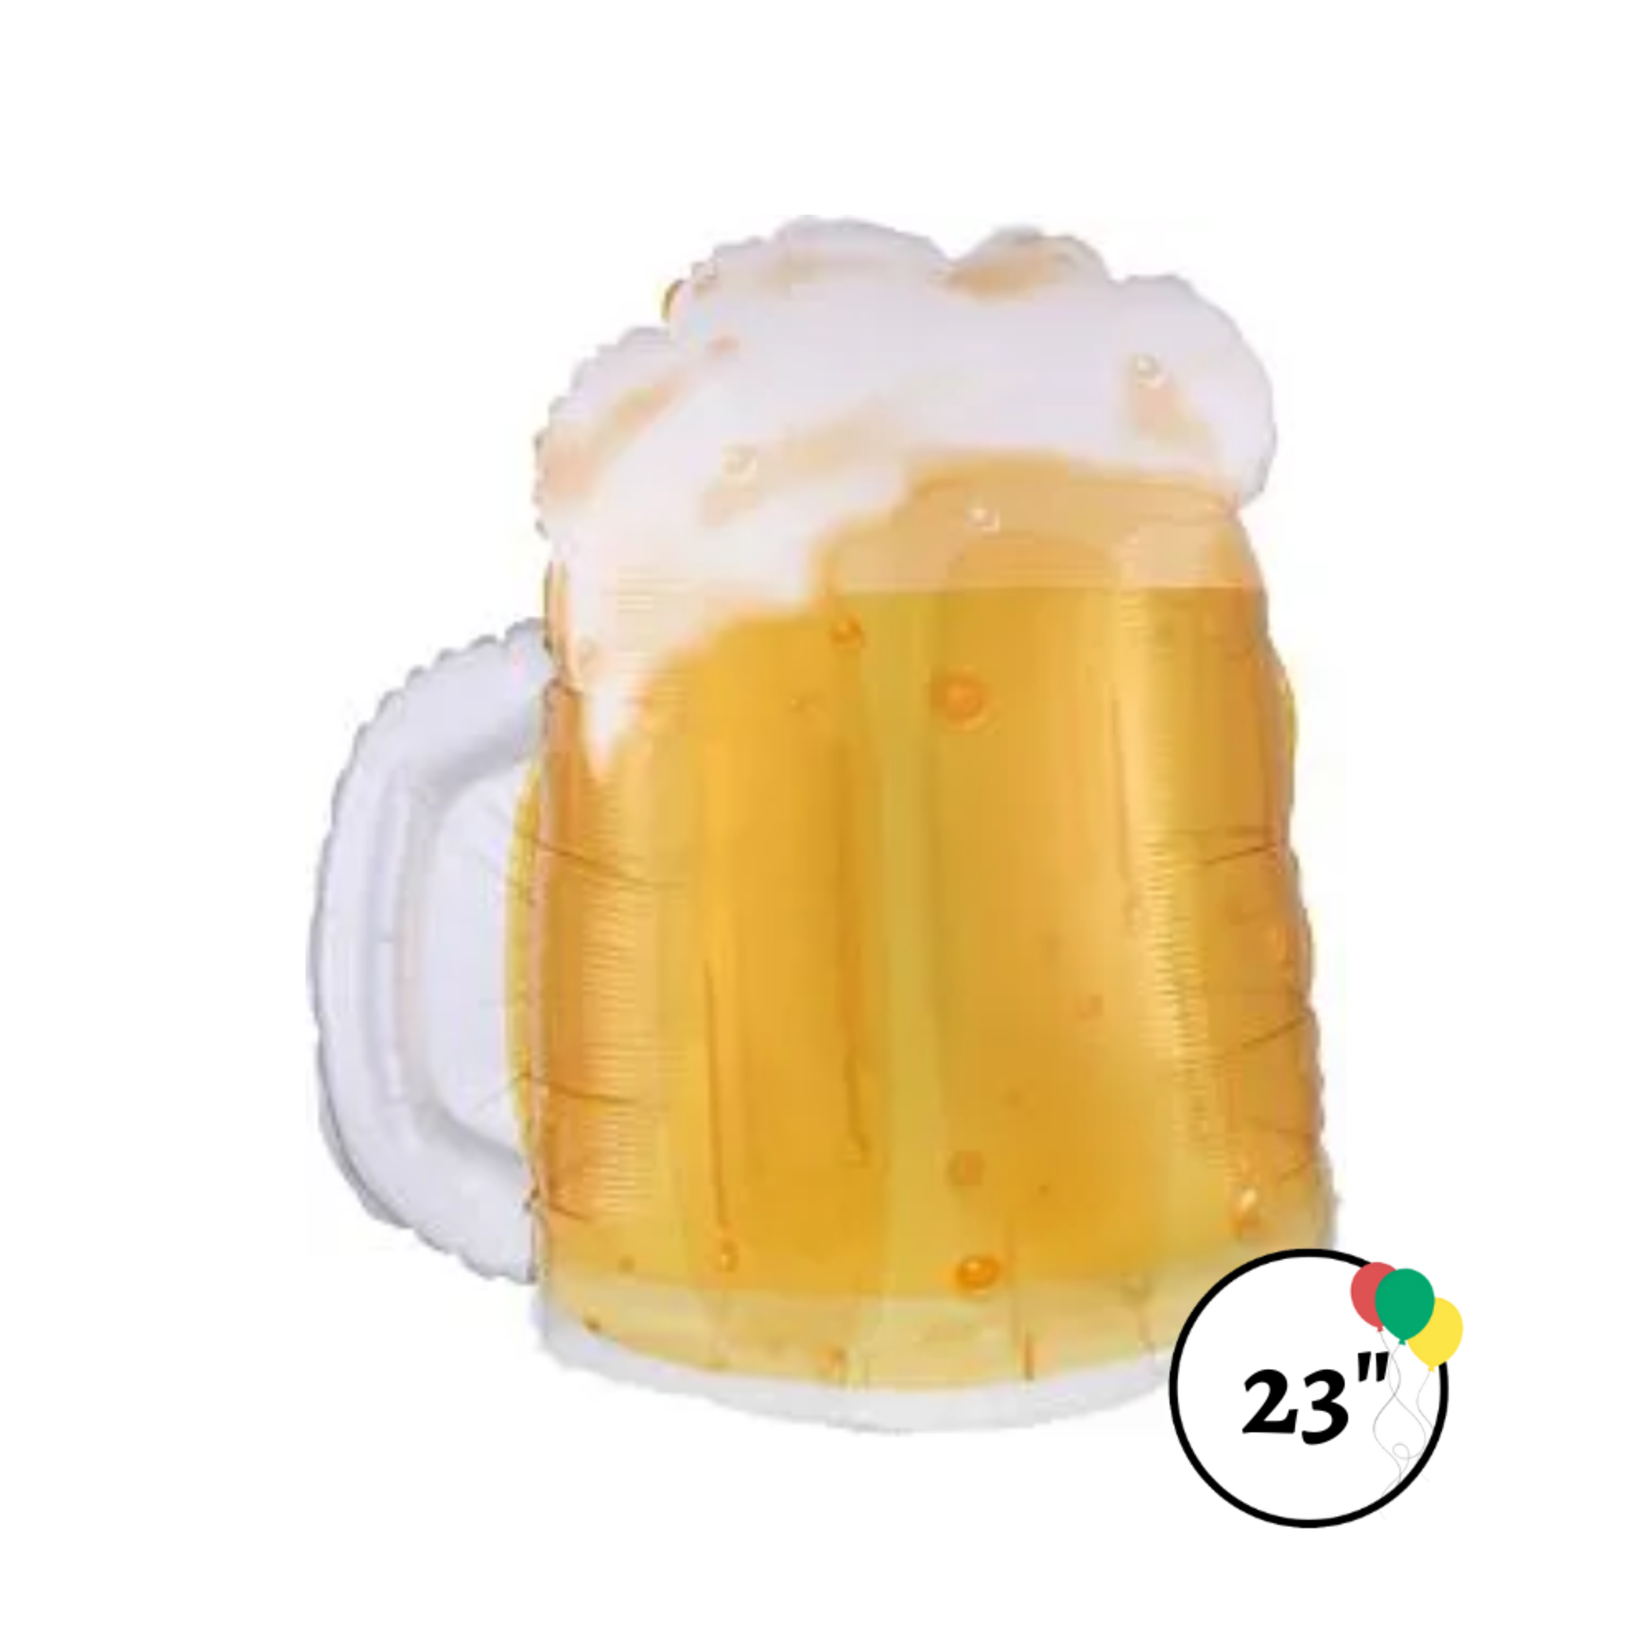 Anagram 23" Beer Mug Shape Balloon